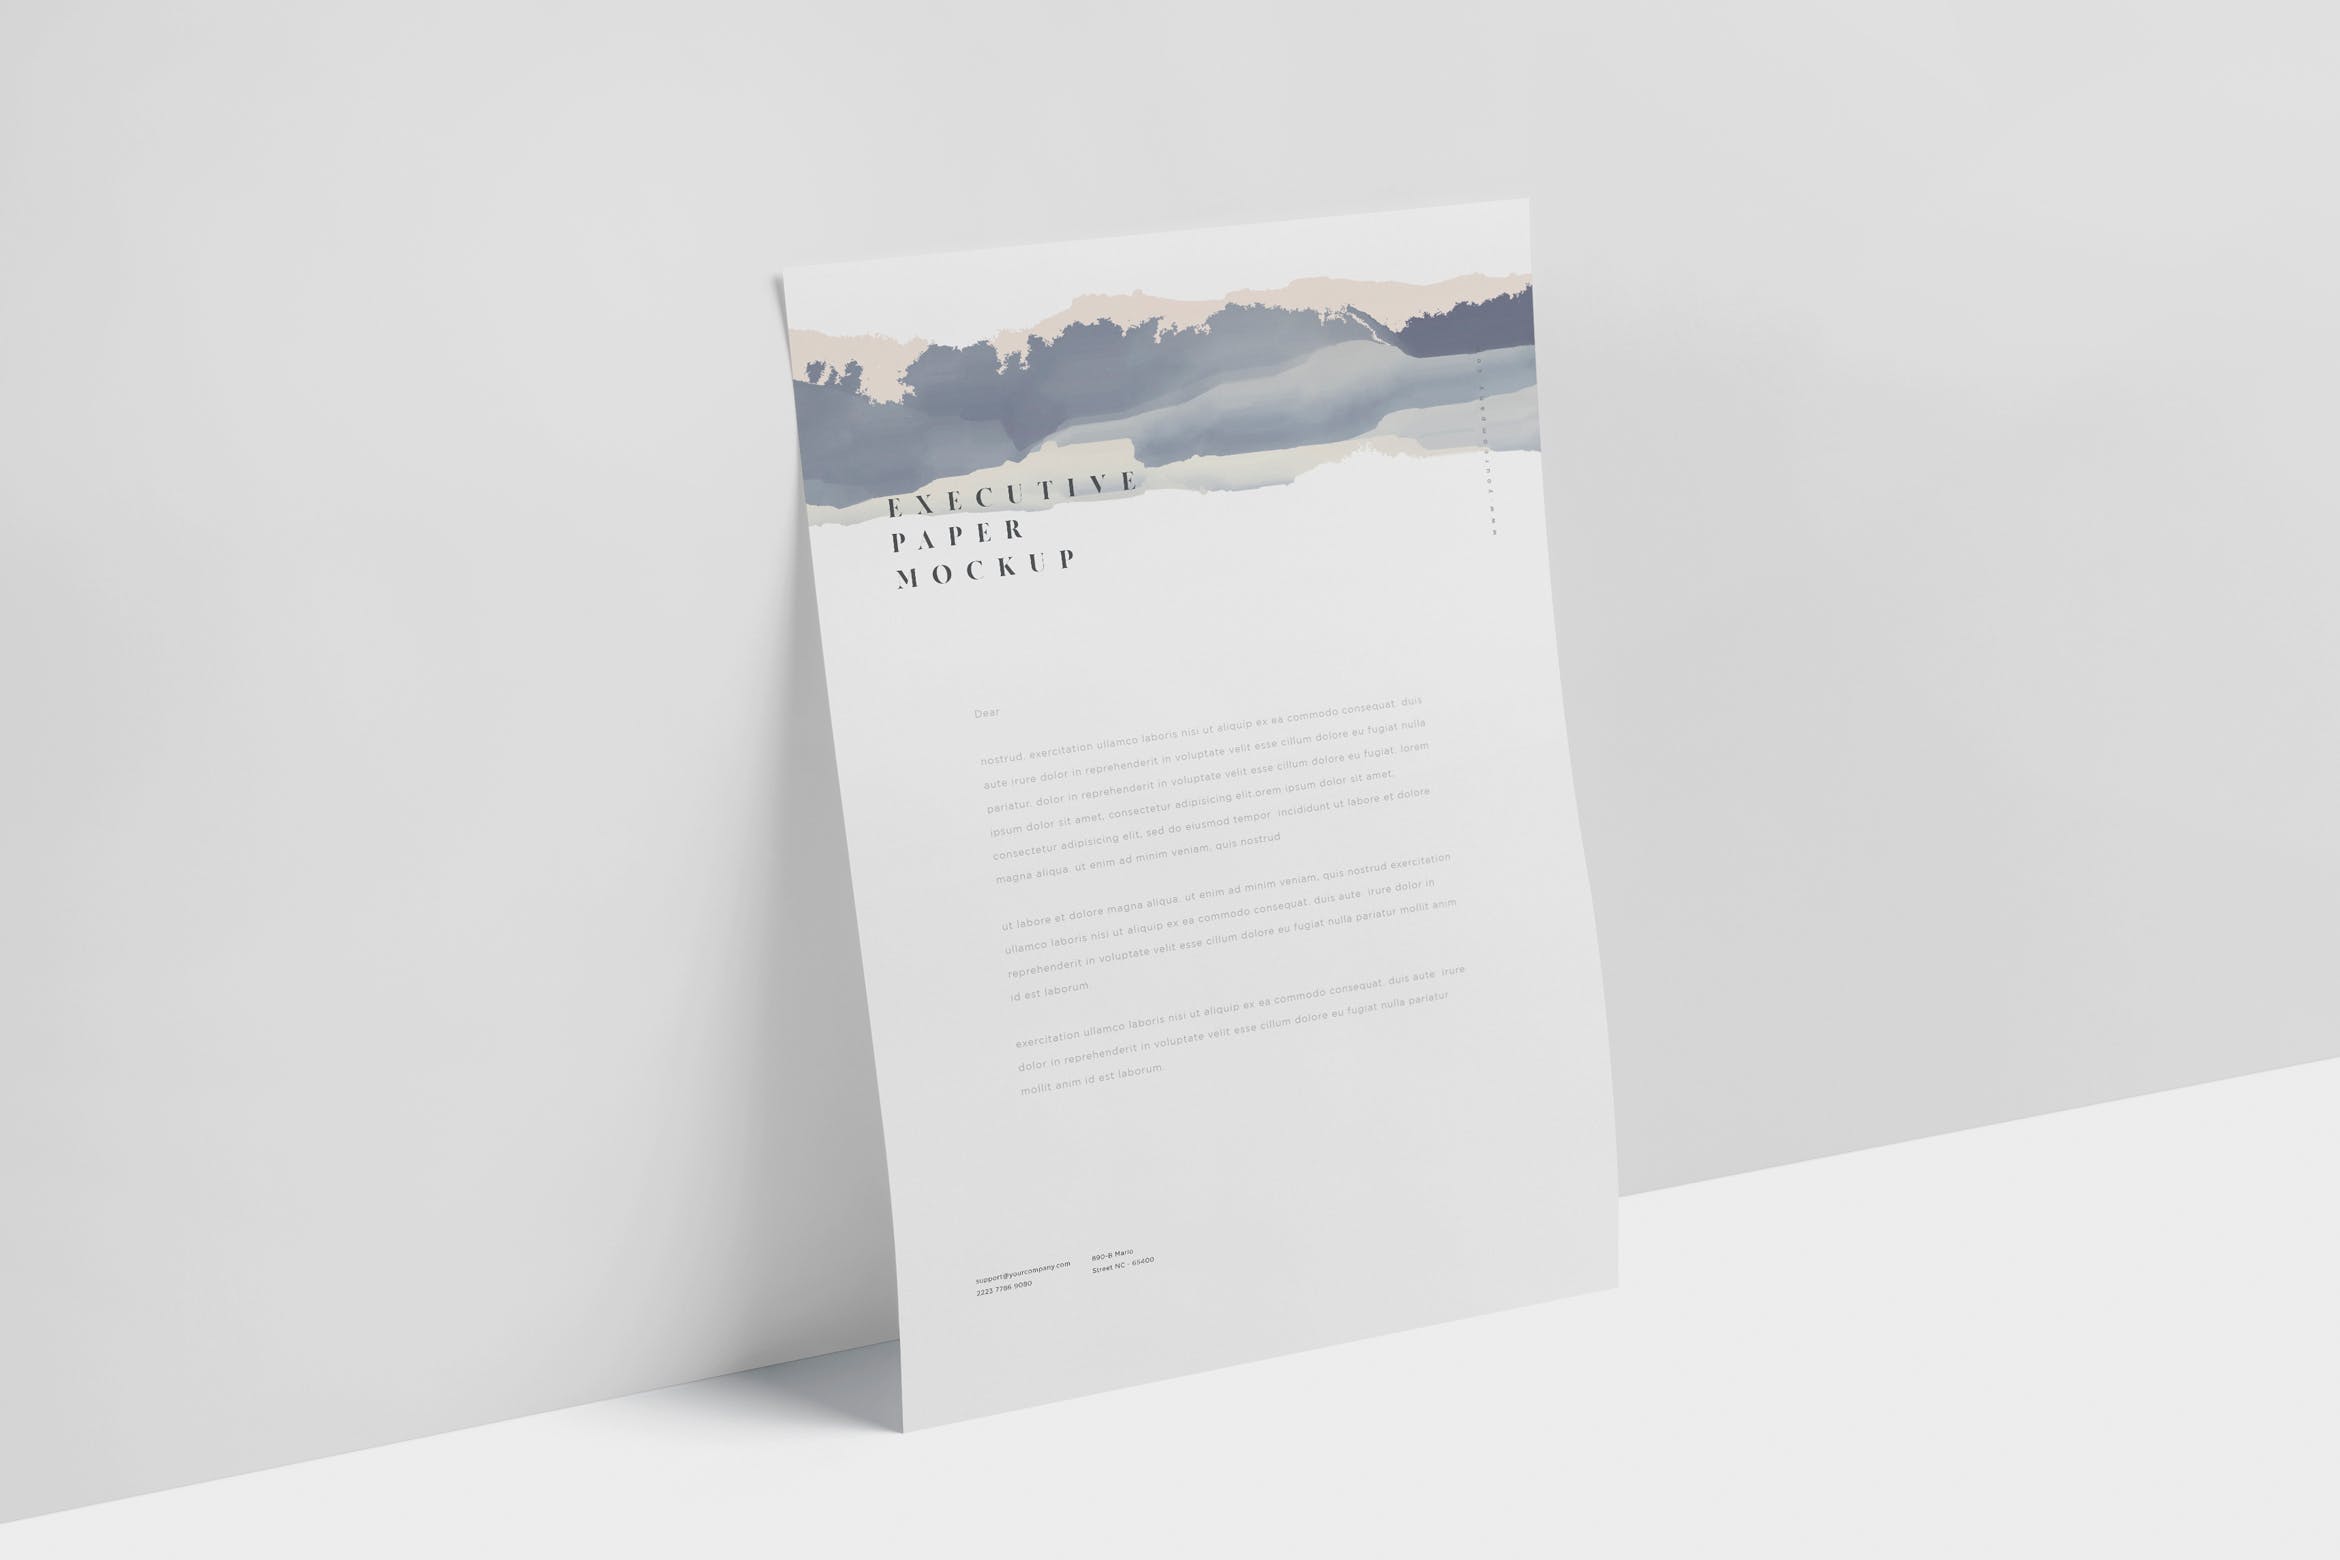 企业宣传单张设计效果图样机16设计网精选 Executive Paper Mockup – 7×10 Inch Size插图